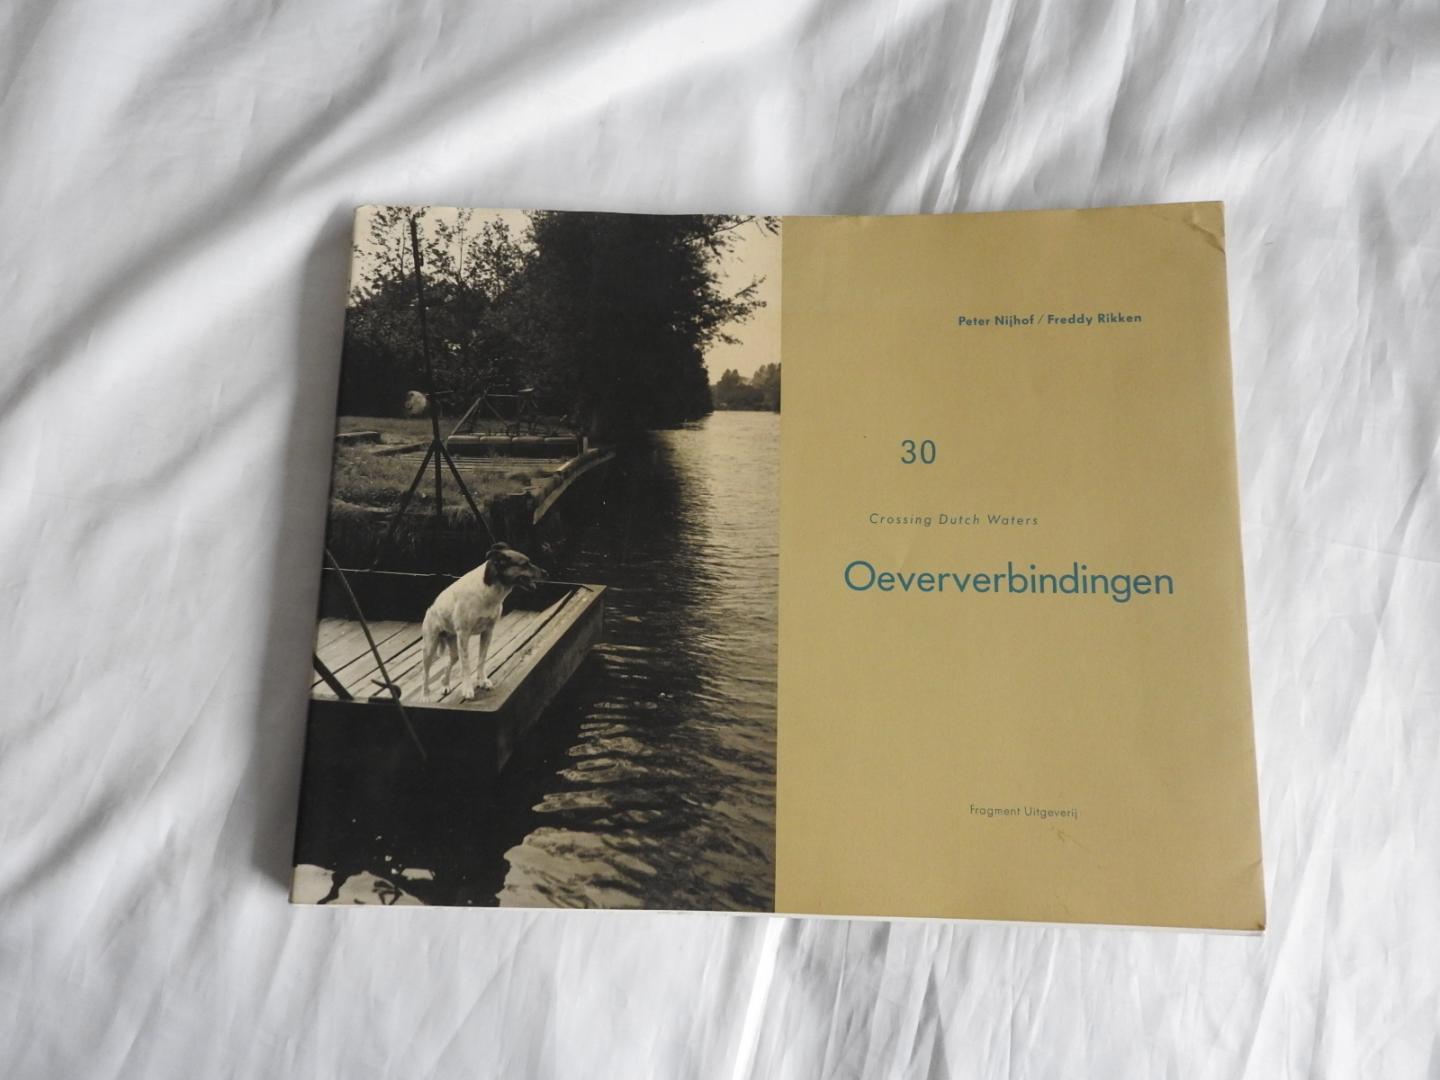 Rikken, Freddy - Peter Nijhof - 30 Oeververbindingen - Crossing Dutch waters